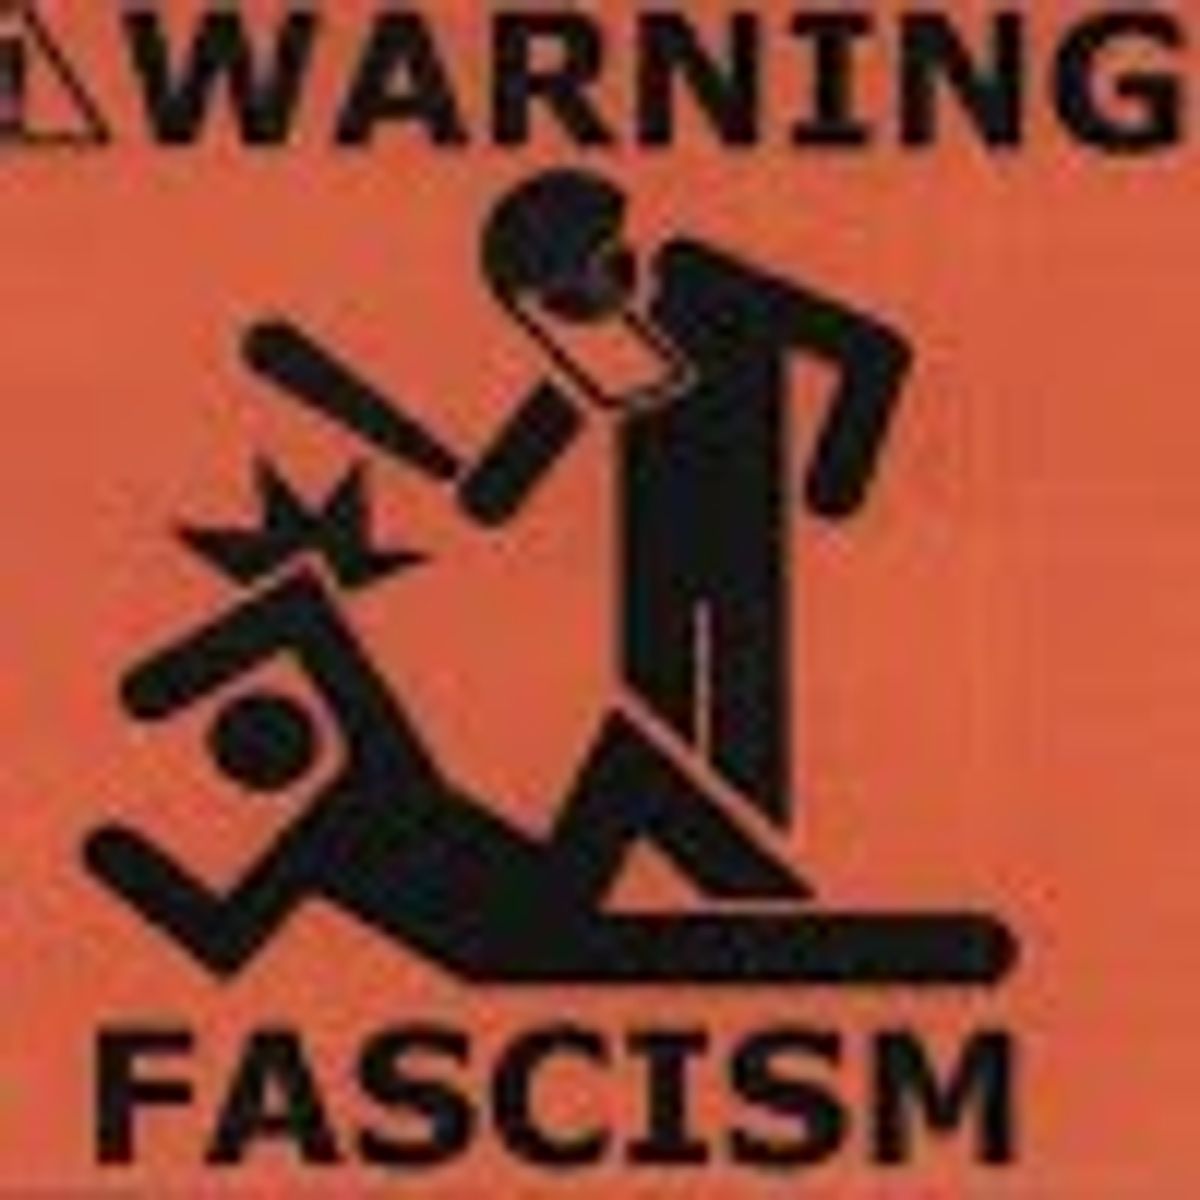 Fascism Alert! Fascism Alert!